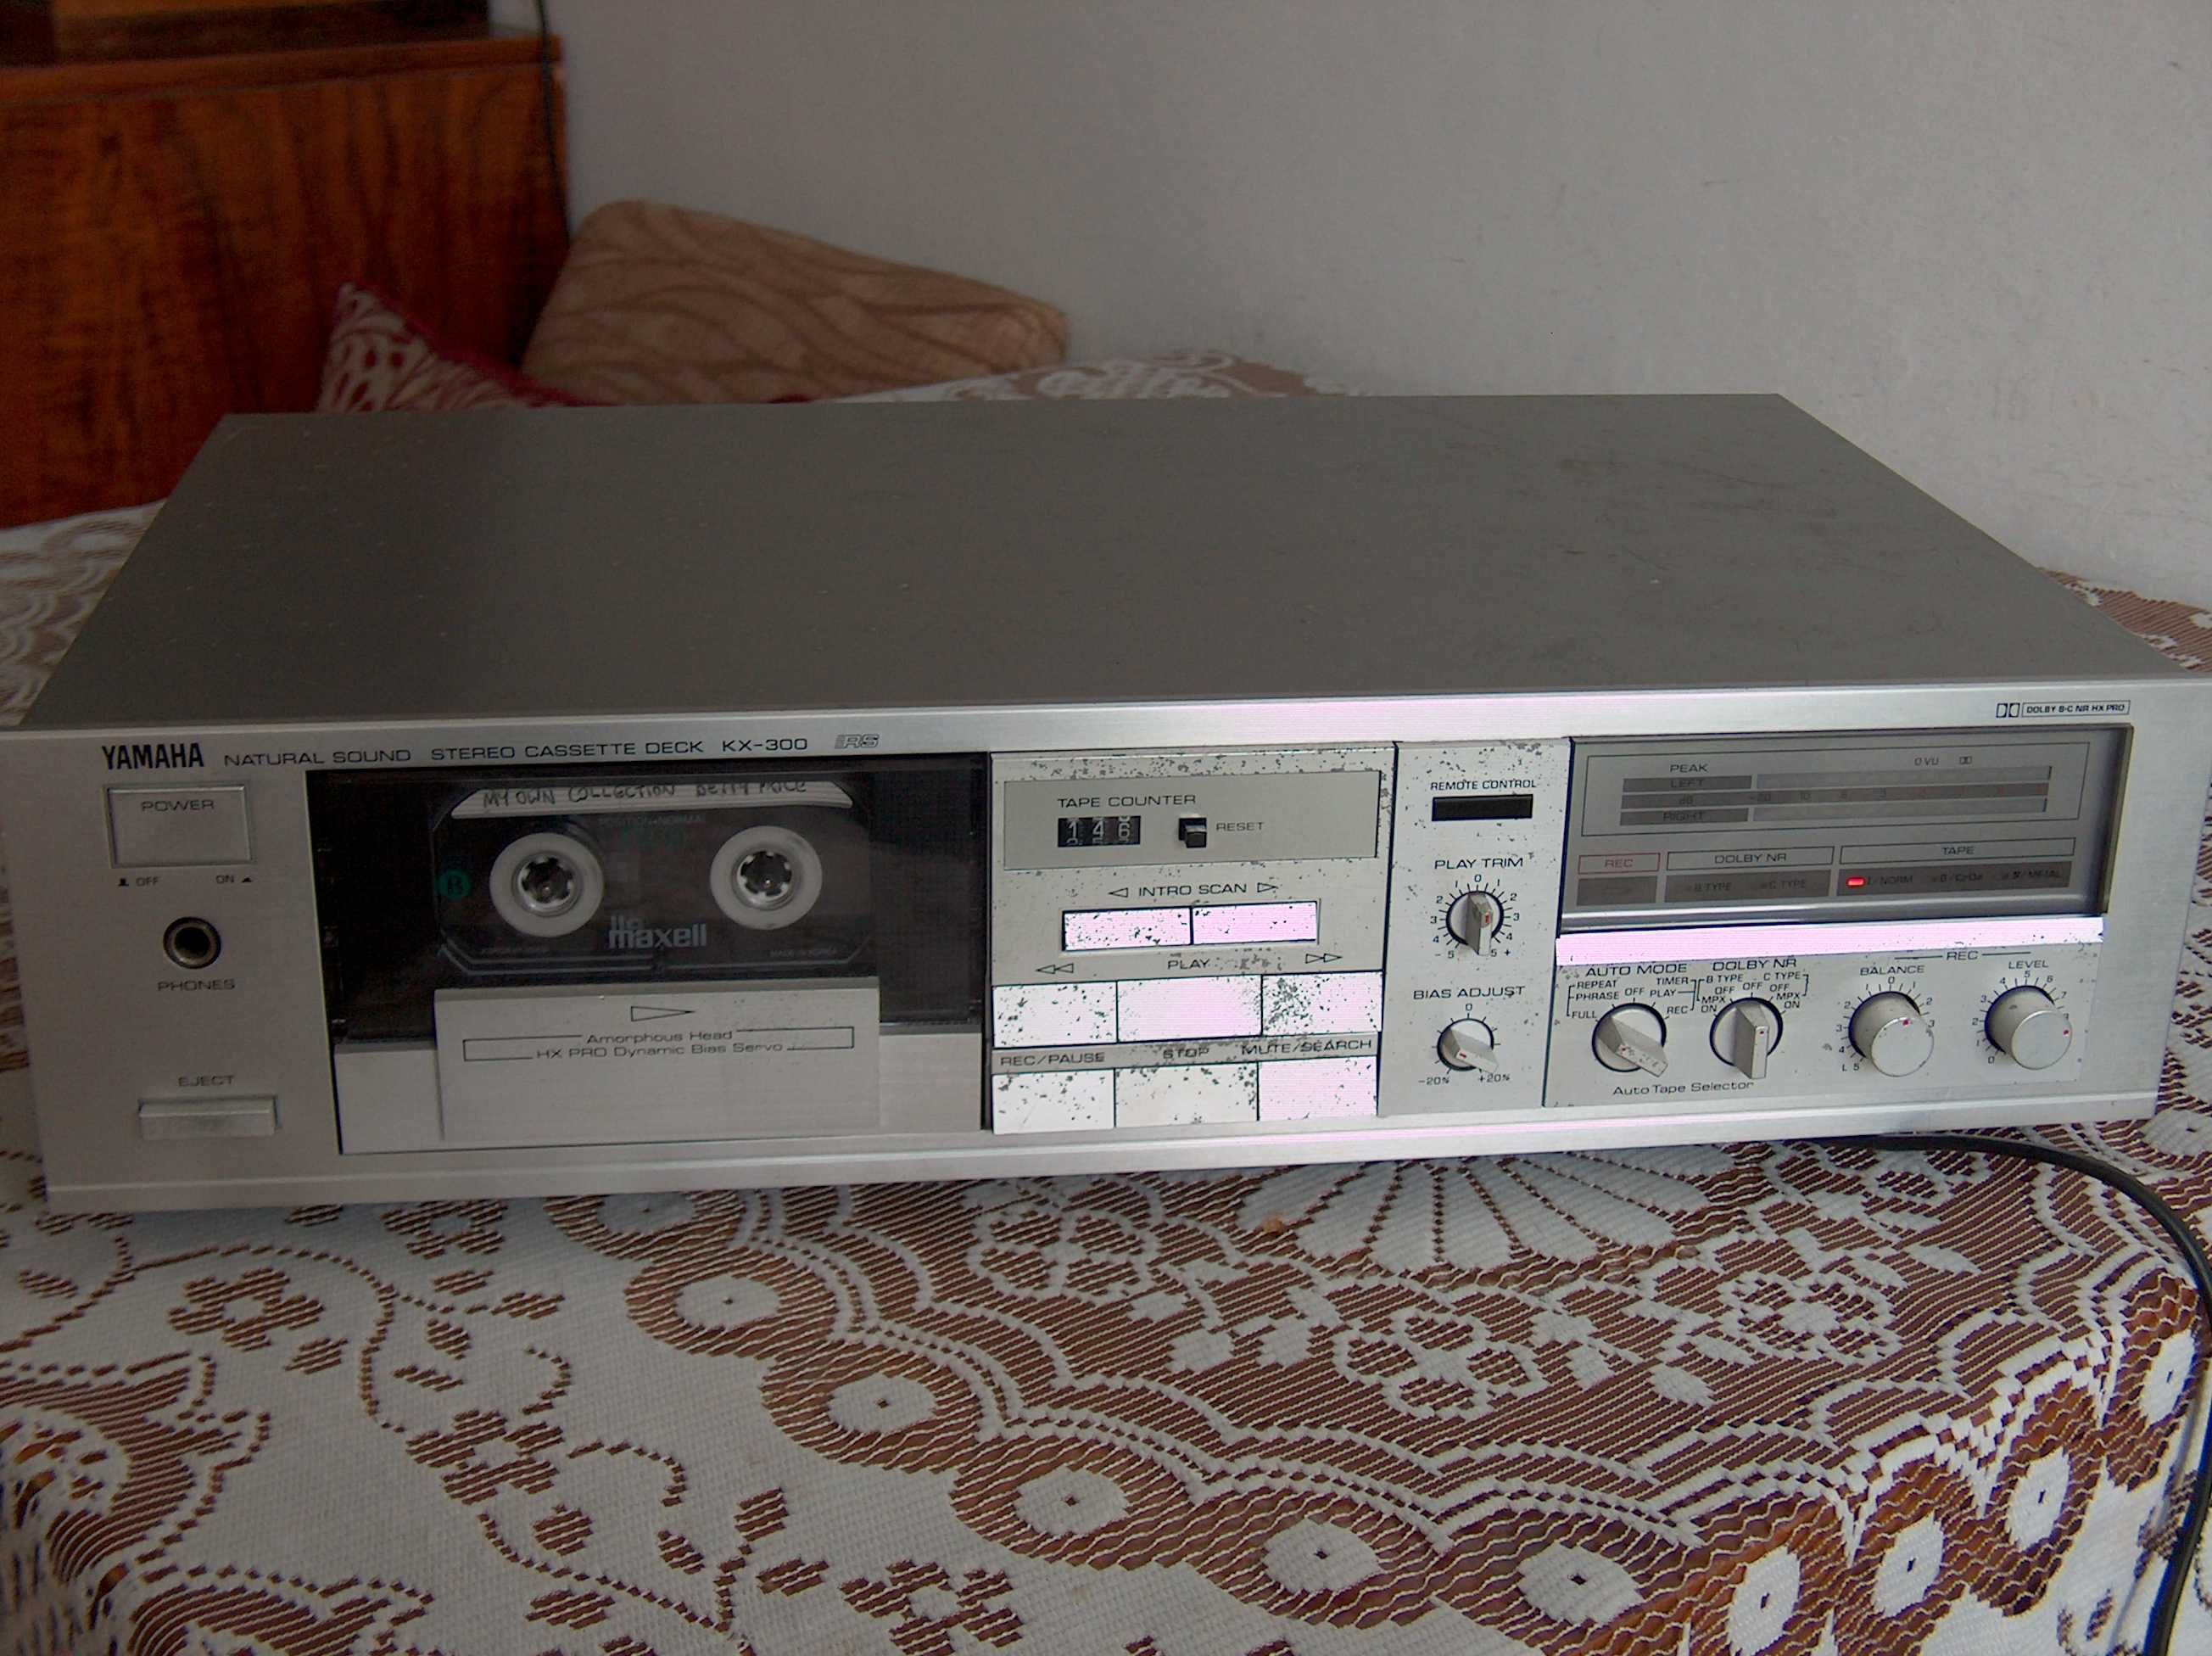 Magnetofon Yamaha KX-300 Dolby B, C, HX Pro srebrny